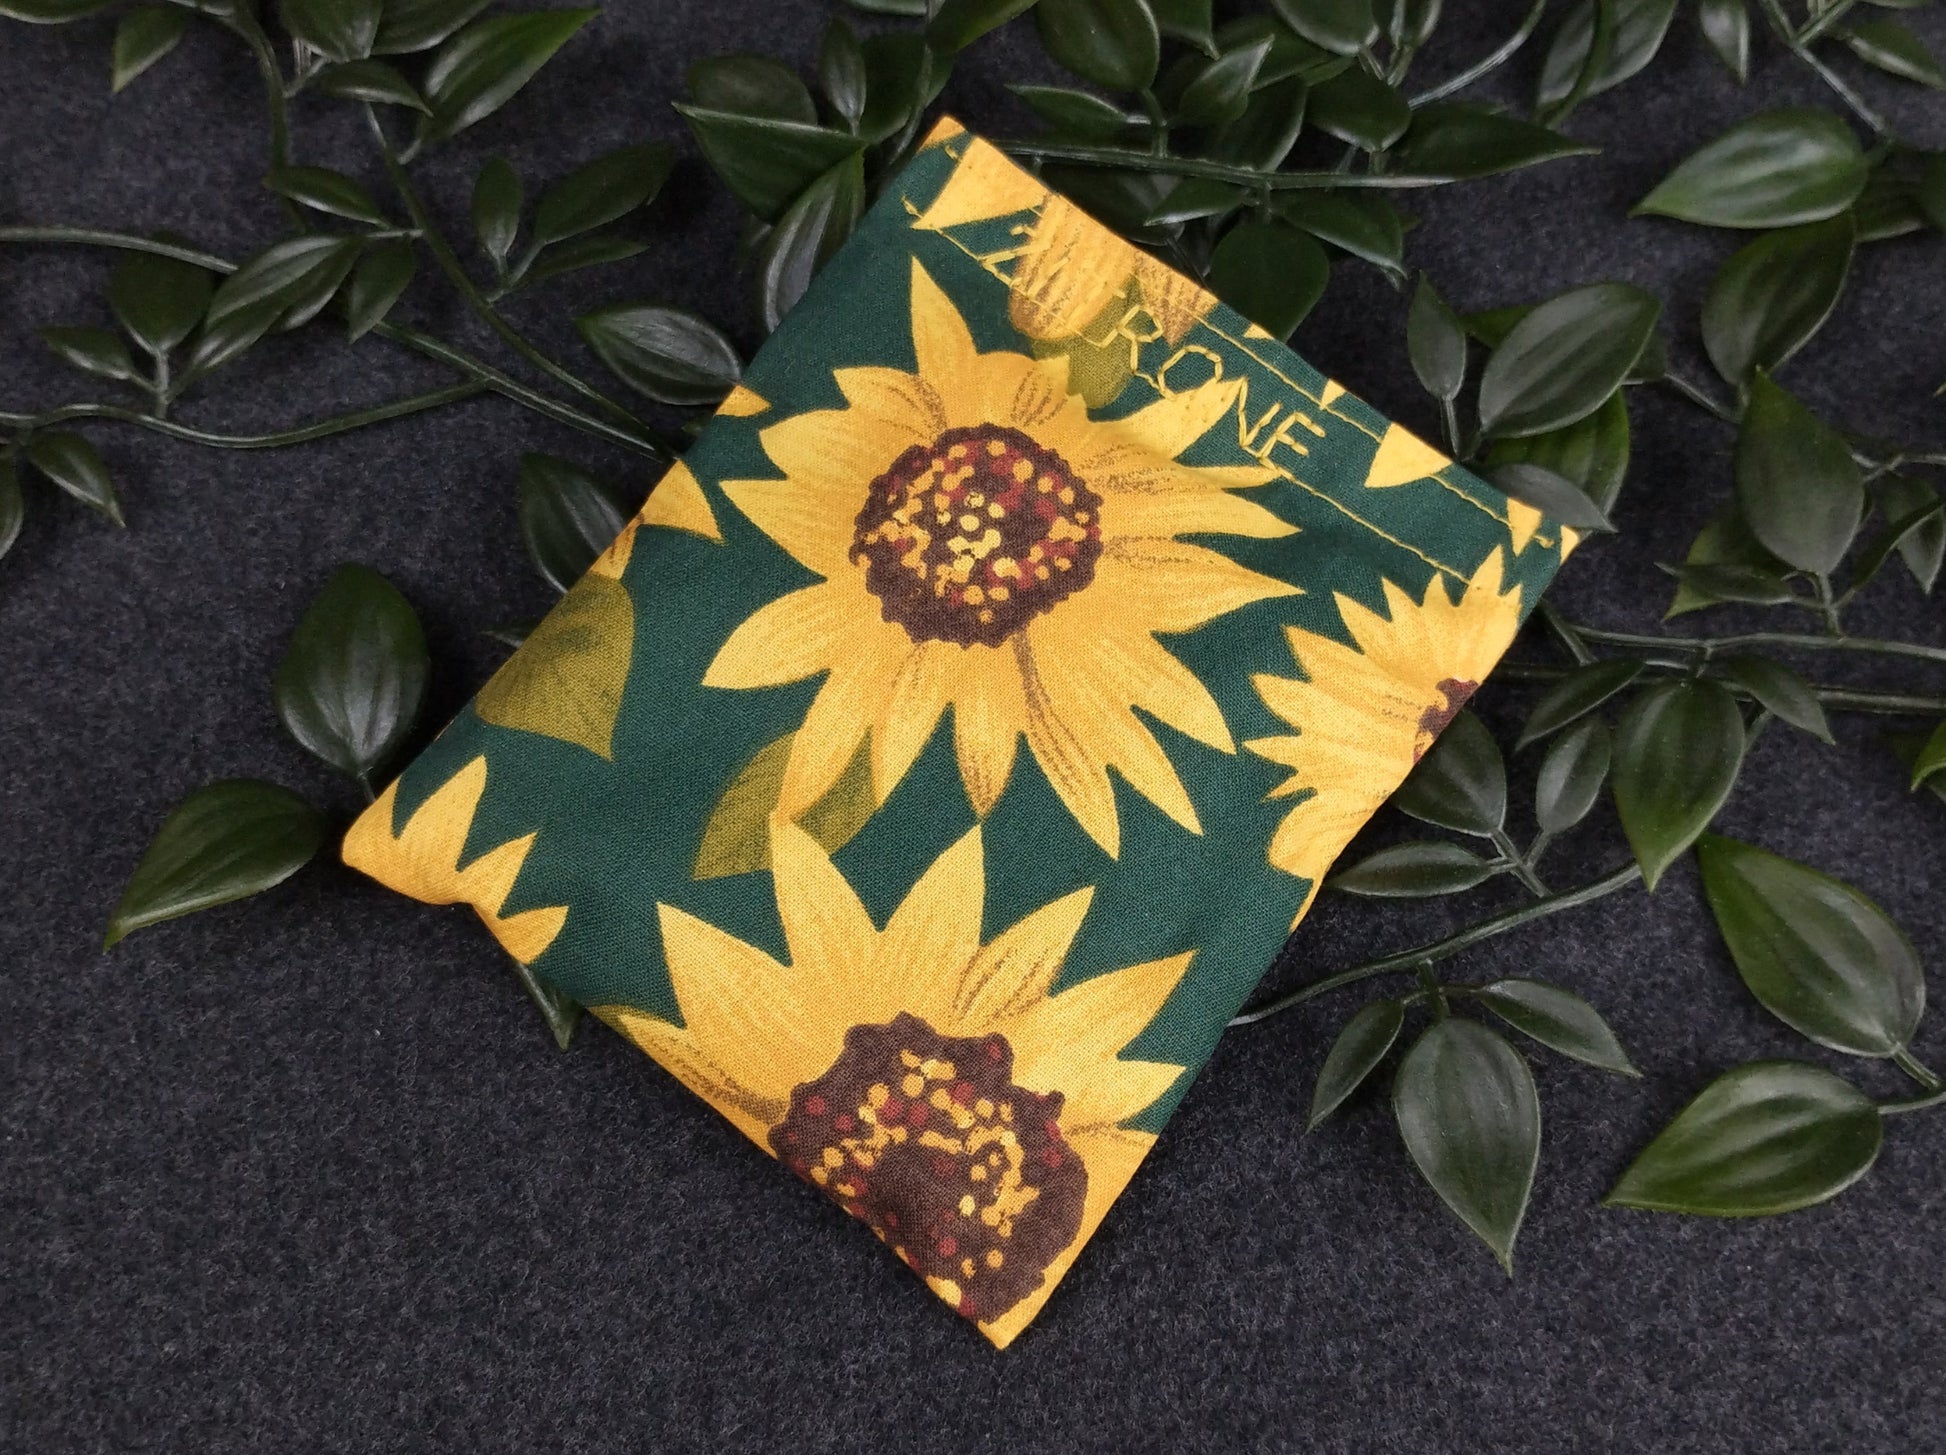 fertiges Duftkissen mit Sonnenblumenmotiven auf grünem Hintergrund. Personalisiert in gelb mit der Aufschrift Zitrone